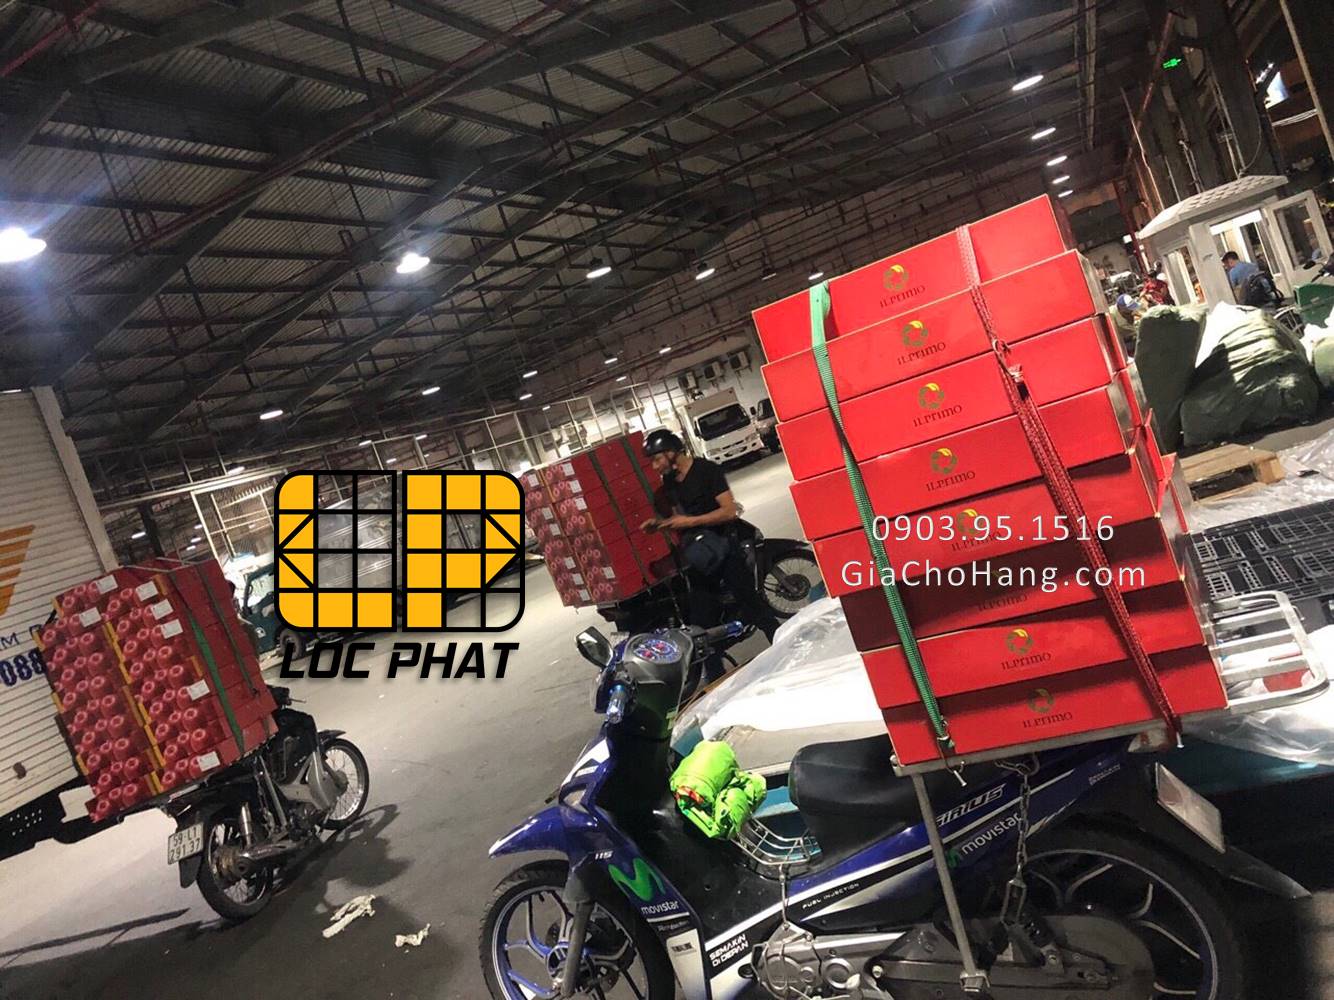 Giá chở hàng, baga chở hàng, giá để hàng, giá đèo hàng xe máy tại Điện Biên